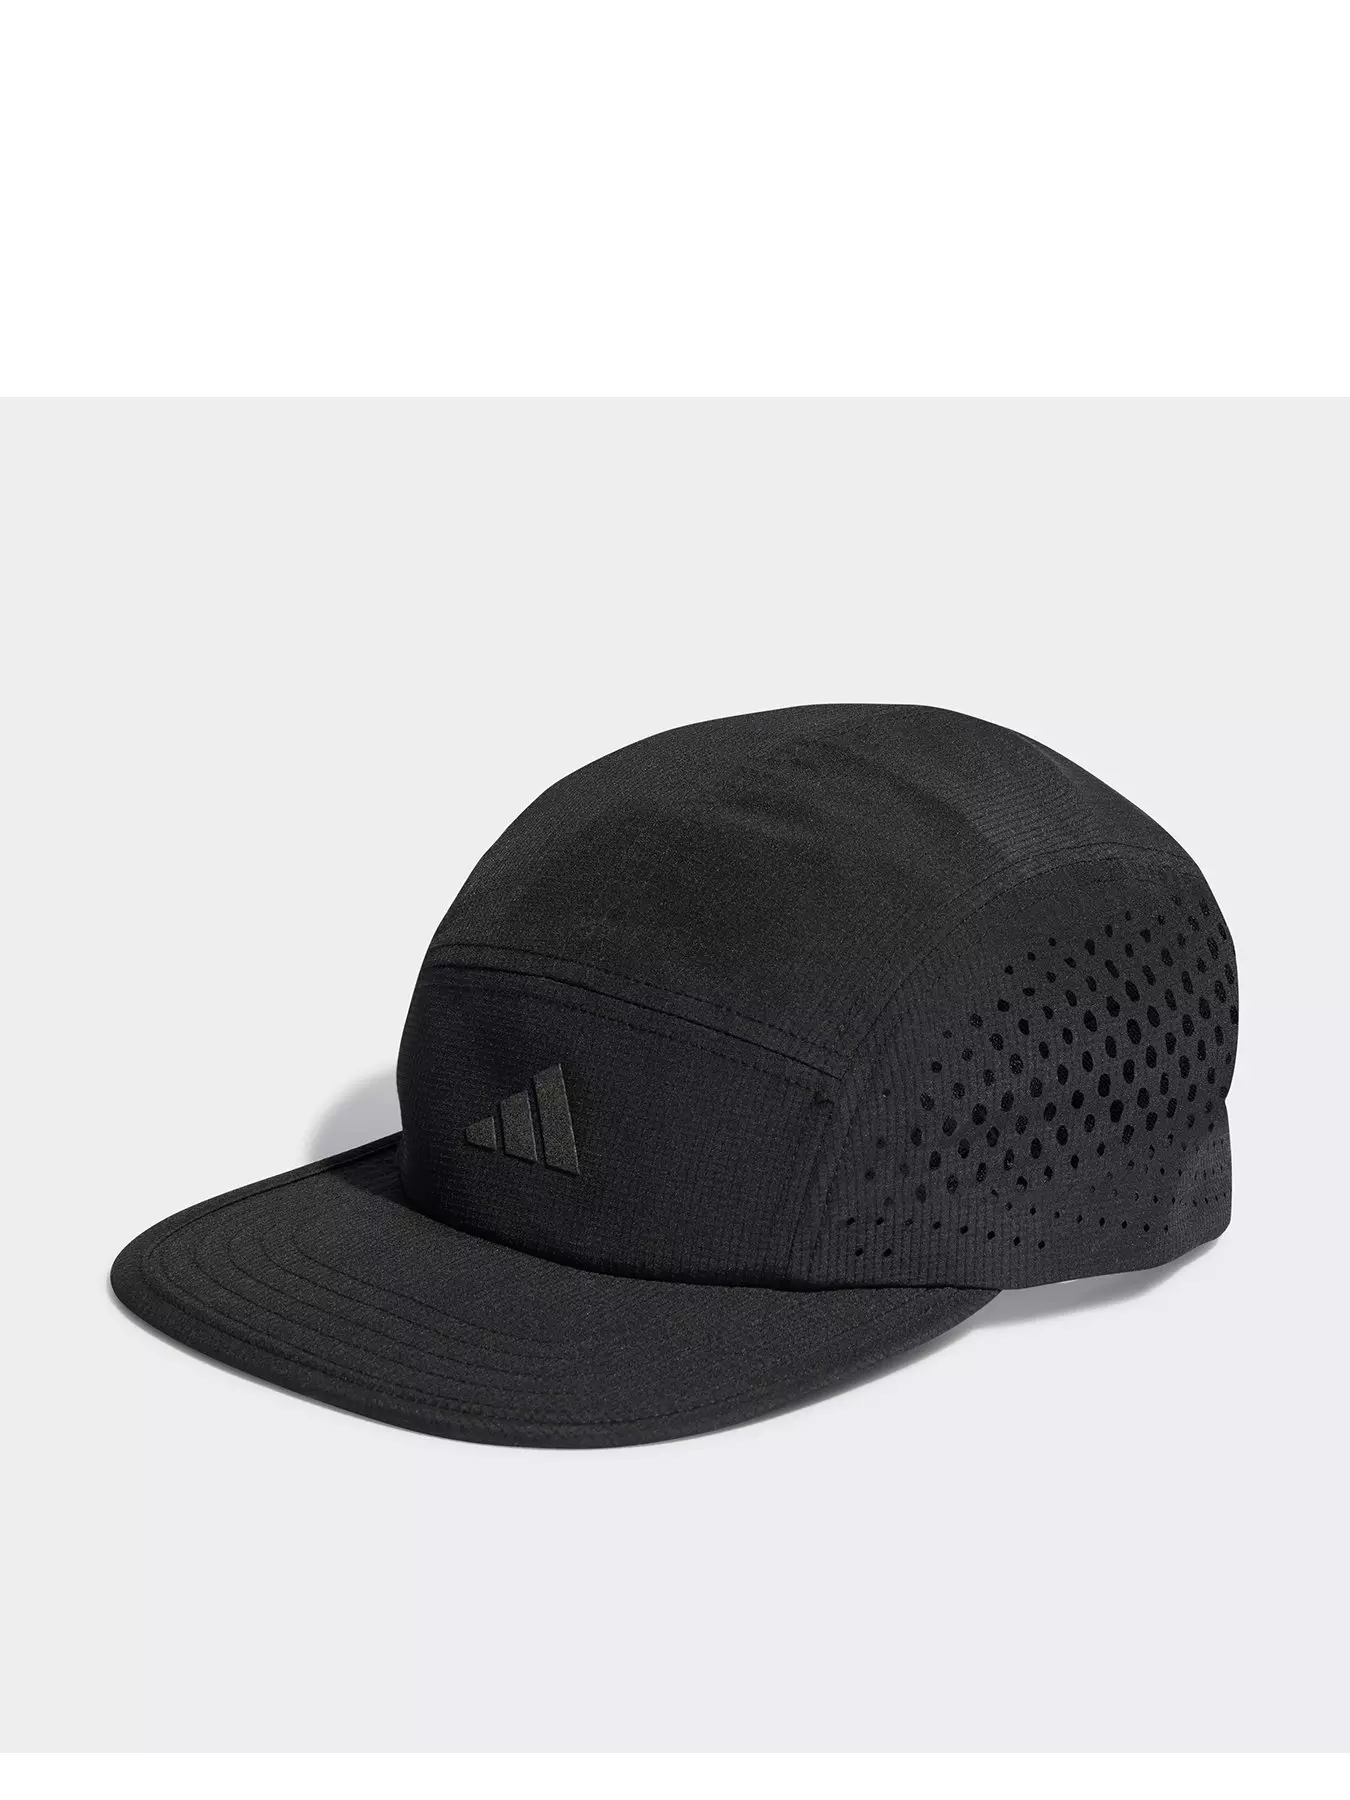 | | Accessories & Men Adidas hats Caps |